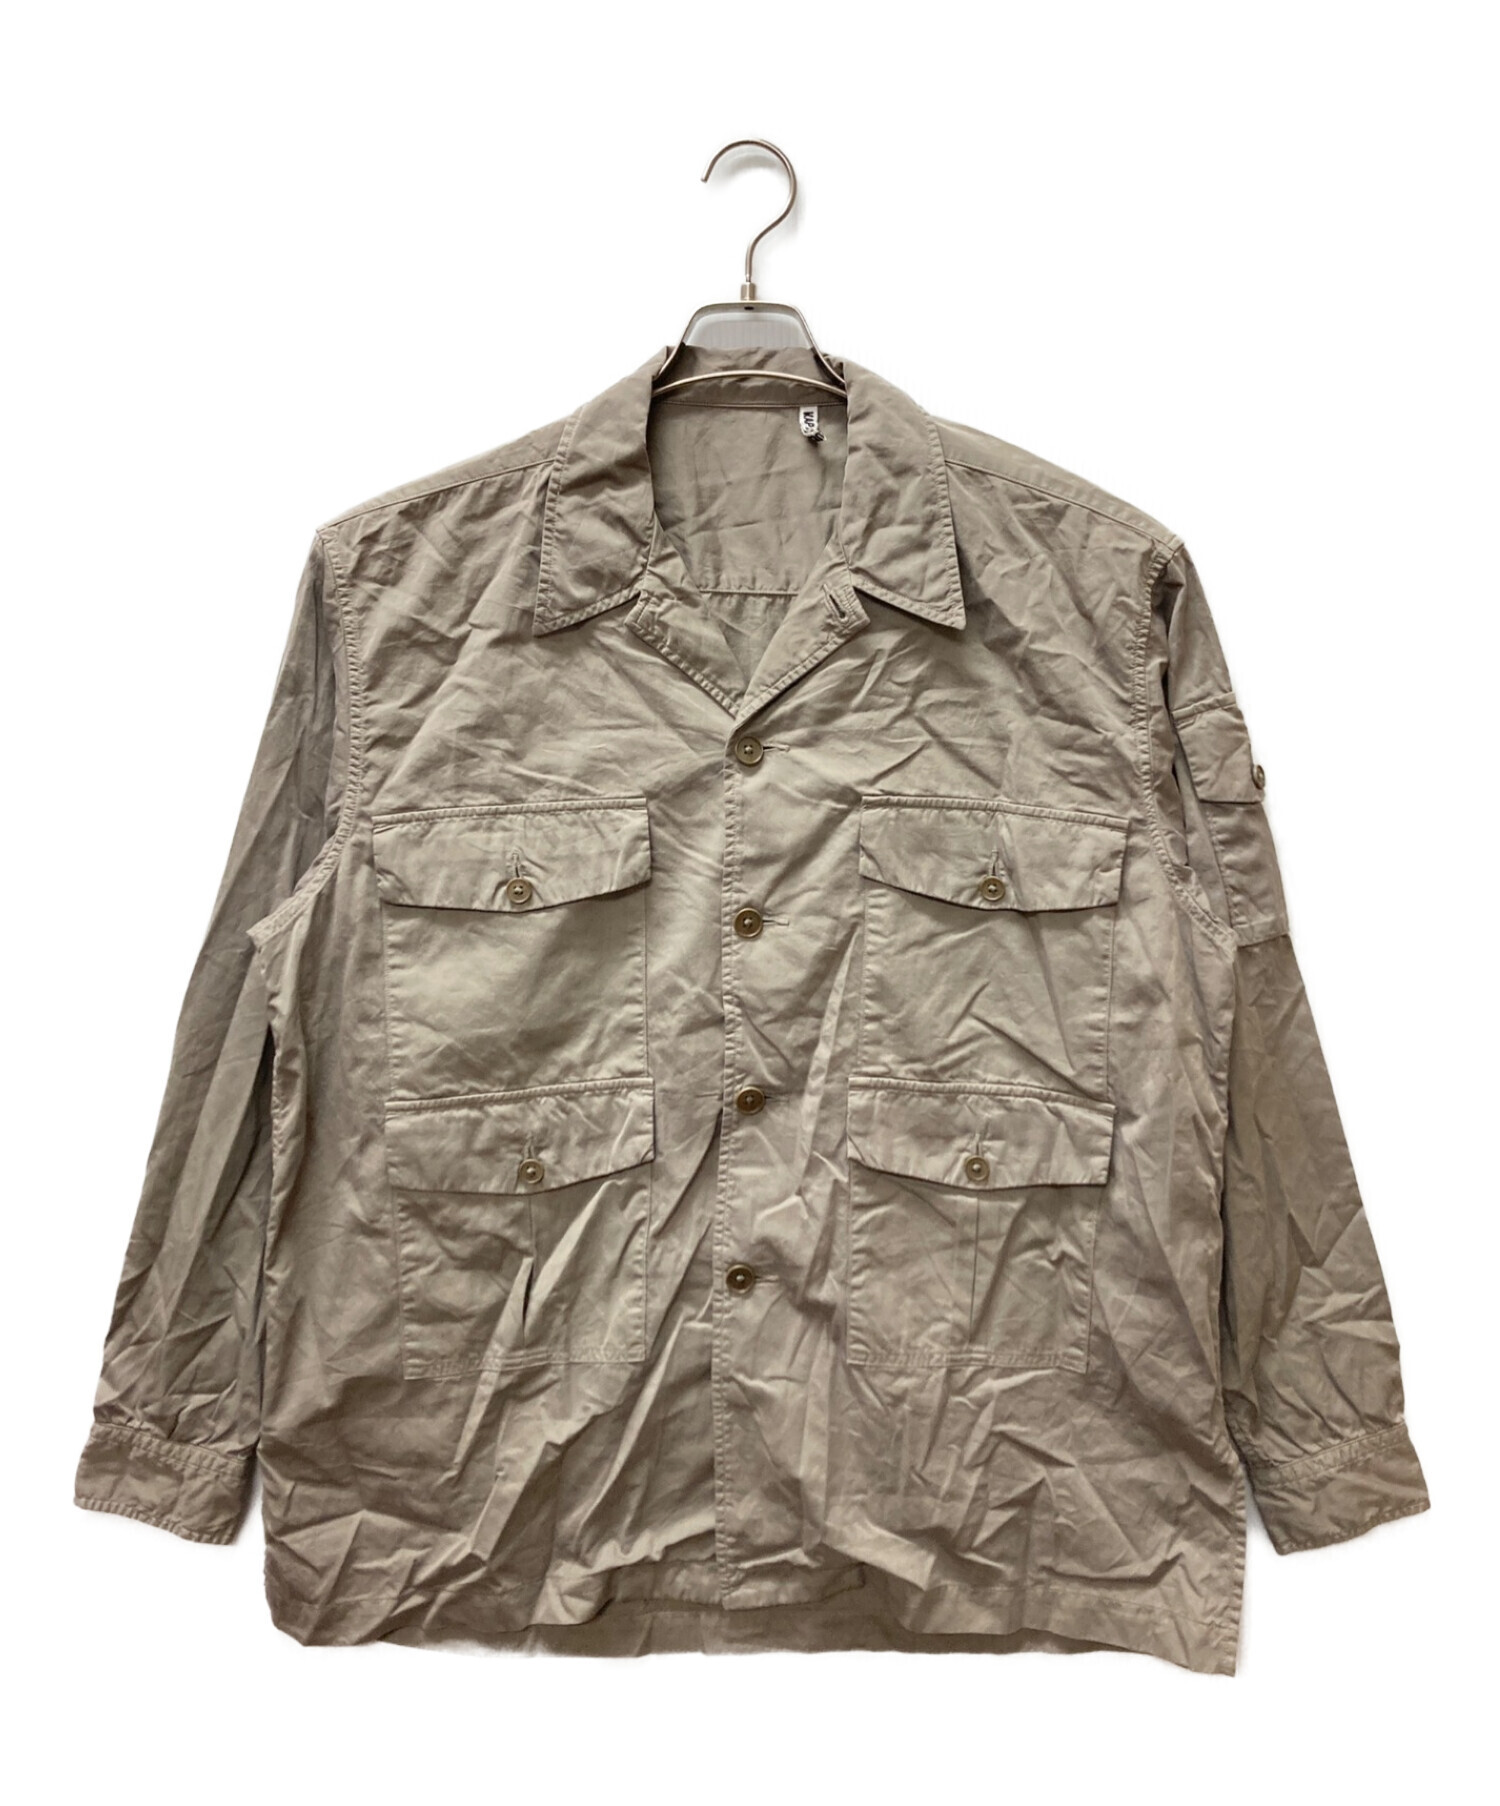 KAPTAIN SUNSHINE (キャプテンサンシャイン) Garment Dyed Safari Shirt Jacket ベージュ サイズ:M